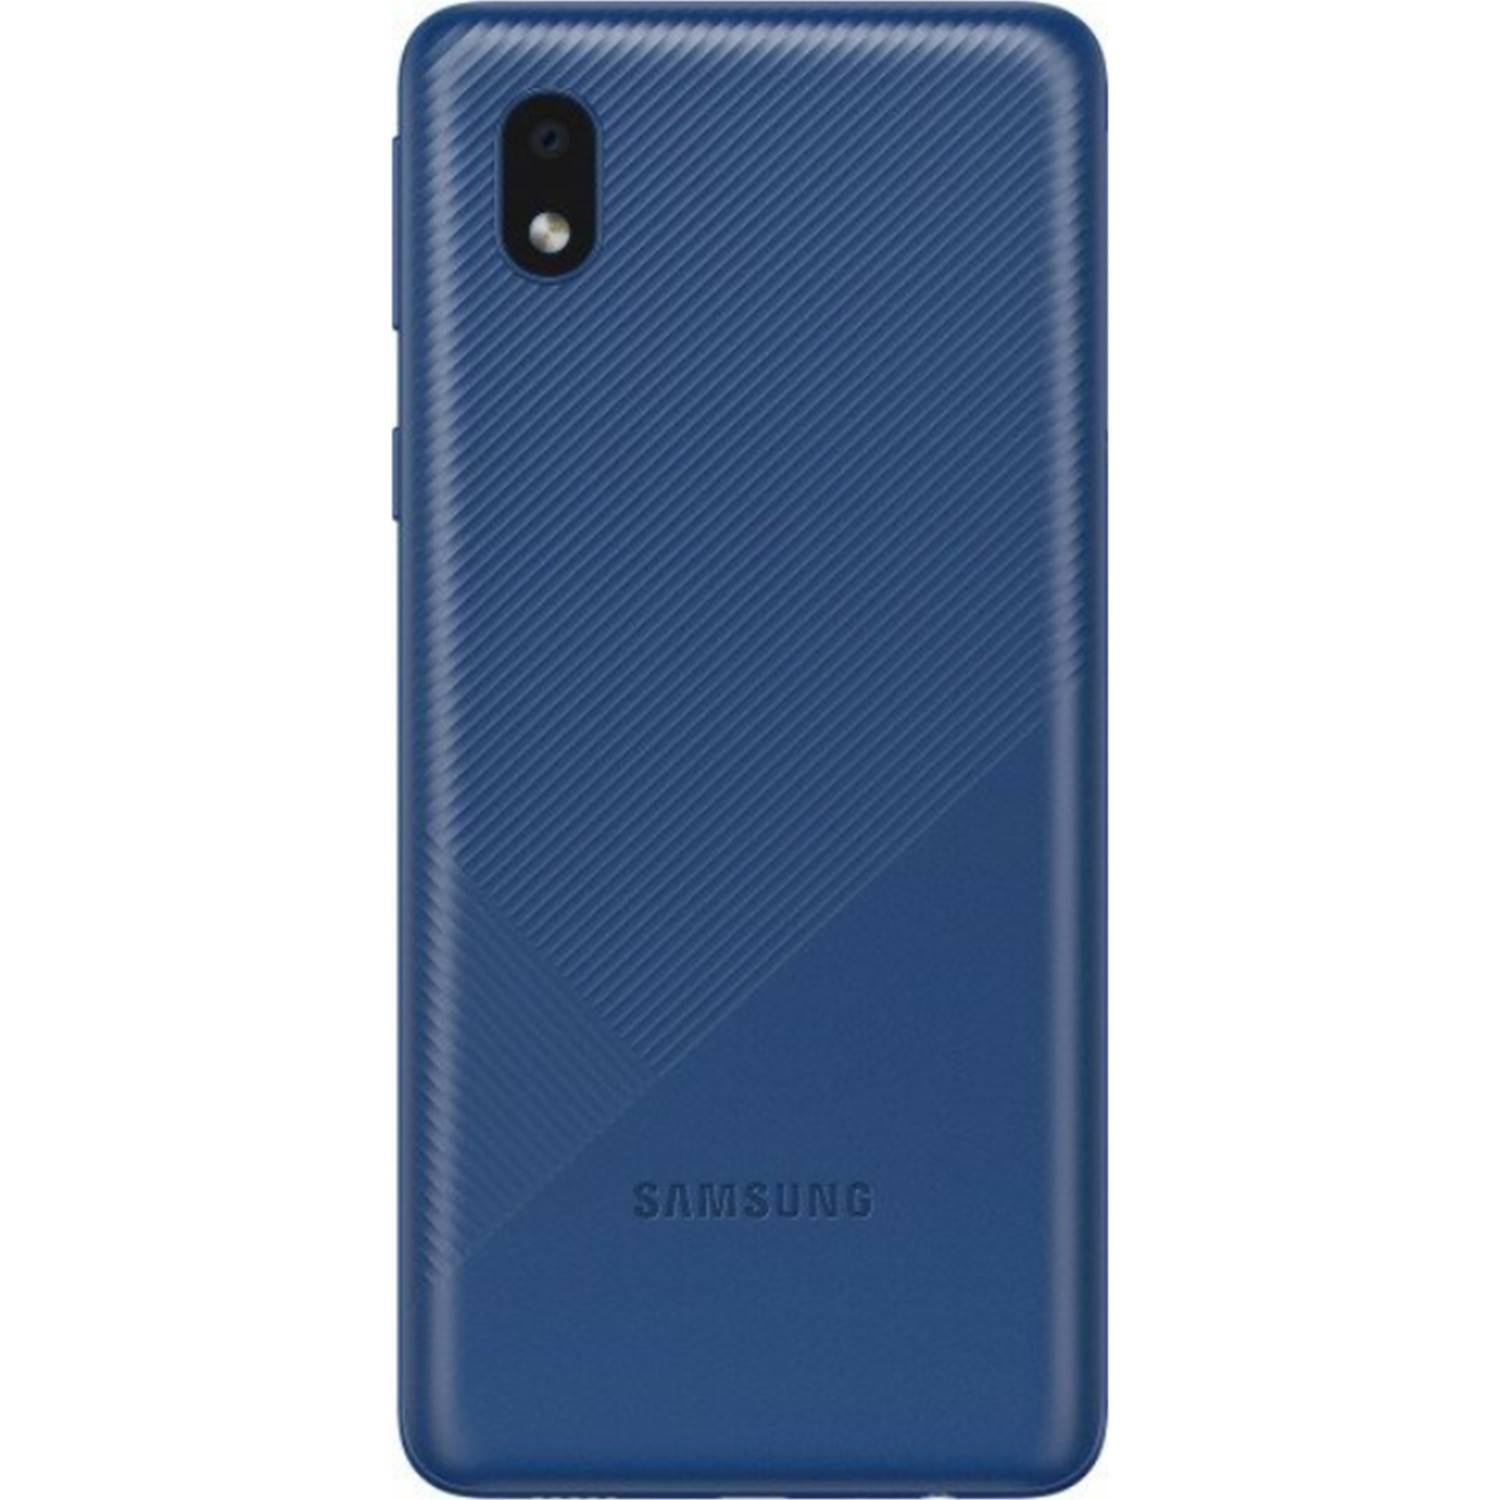 Samsung Galaxy A01 Core (Samsung Türkiye Garantili)